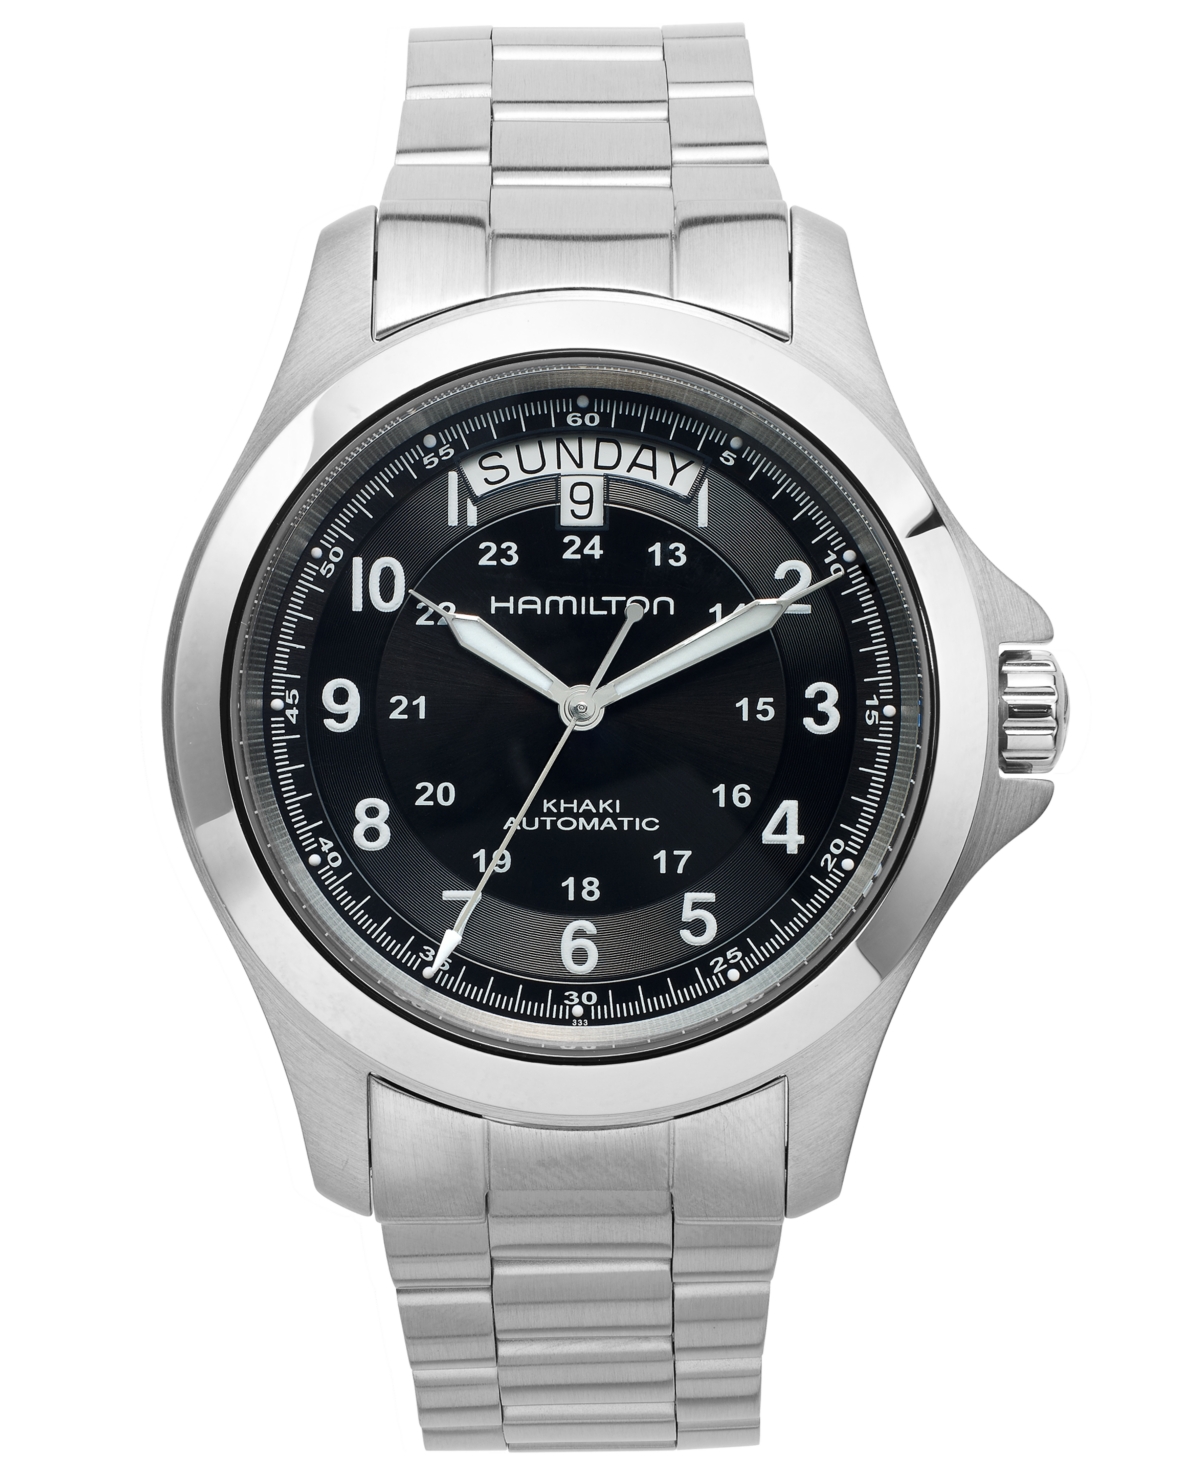 Hamilton Men's Swiss Automatic Khaki King Stainless Steel Bracelet Watch 40mm H64455133 In Silver